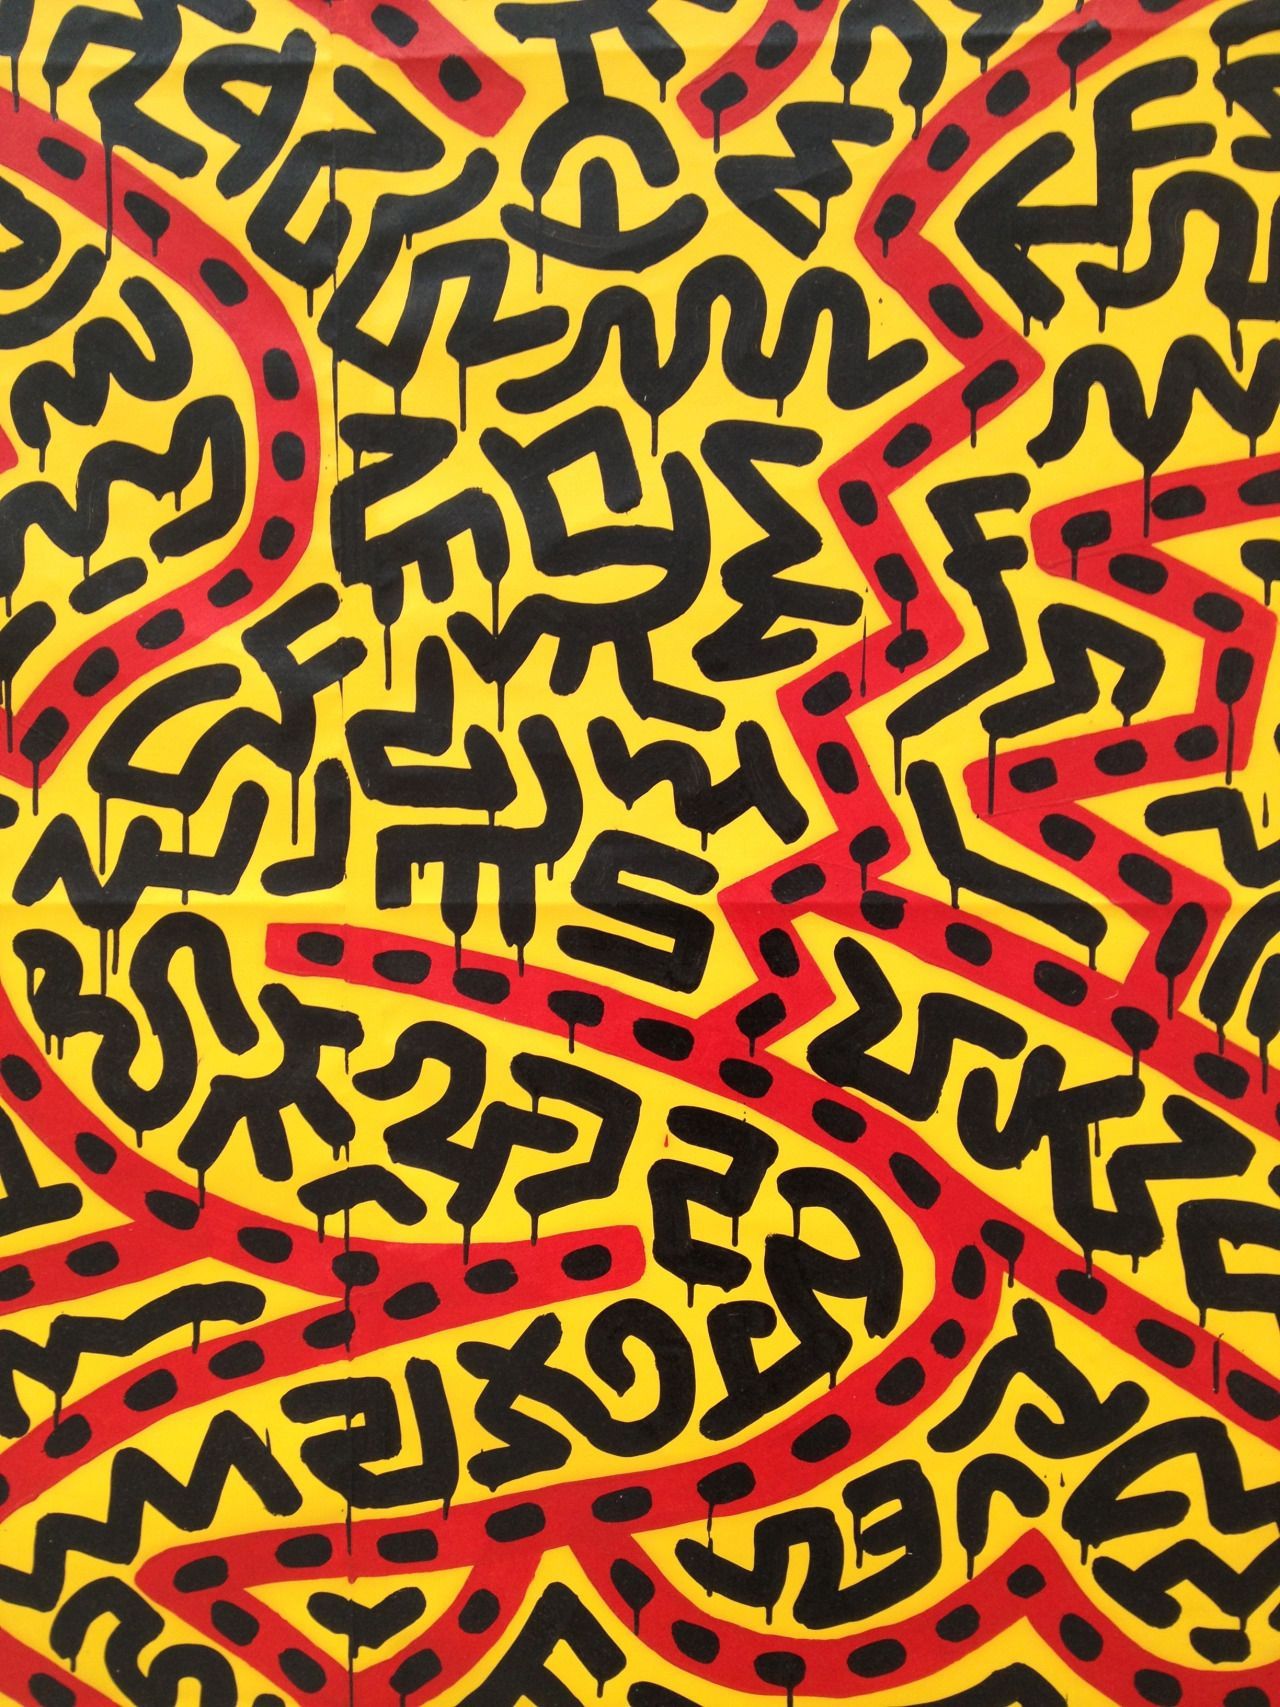 Keith Haring Desktop Wallpaper posted .cutewallpaper.org